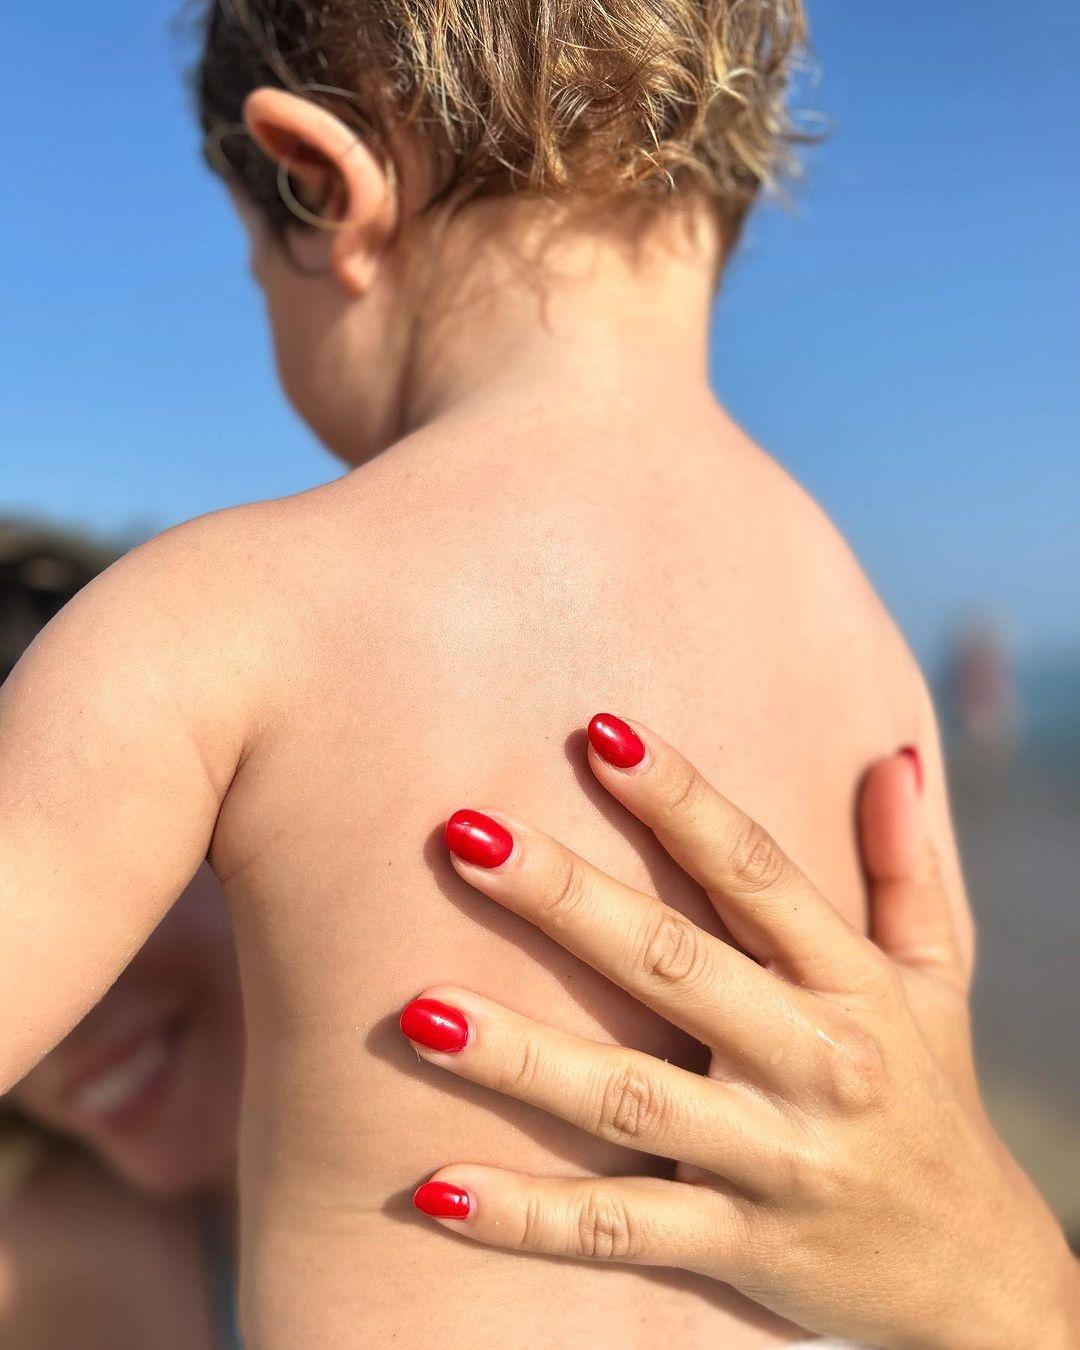 Κατερίνα Στικούδη: Δείτε την μοναδική φωτογραφία με τον 20 μηνών γιο της στην παραλία